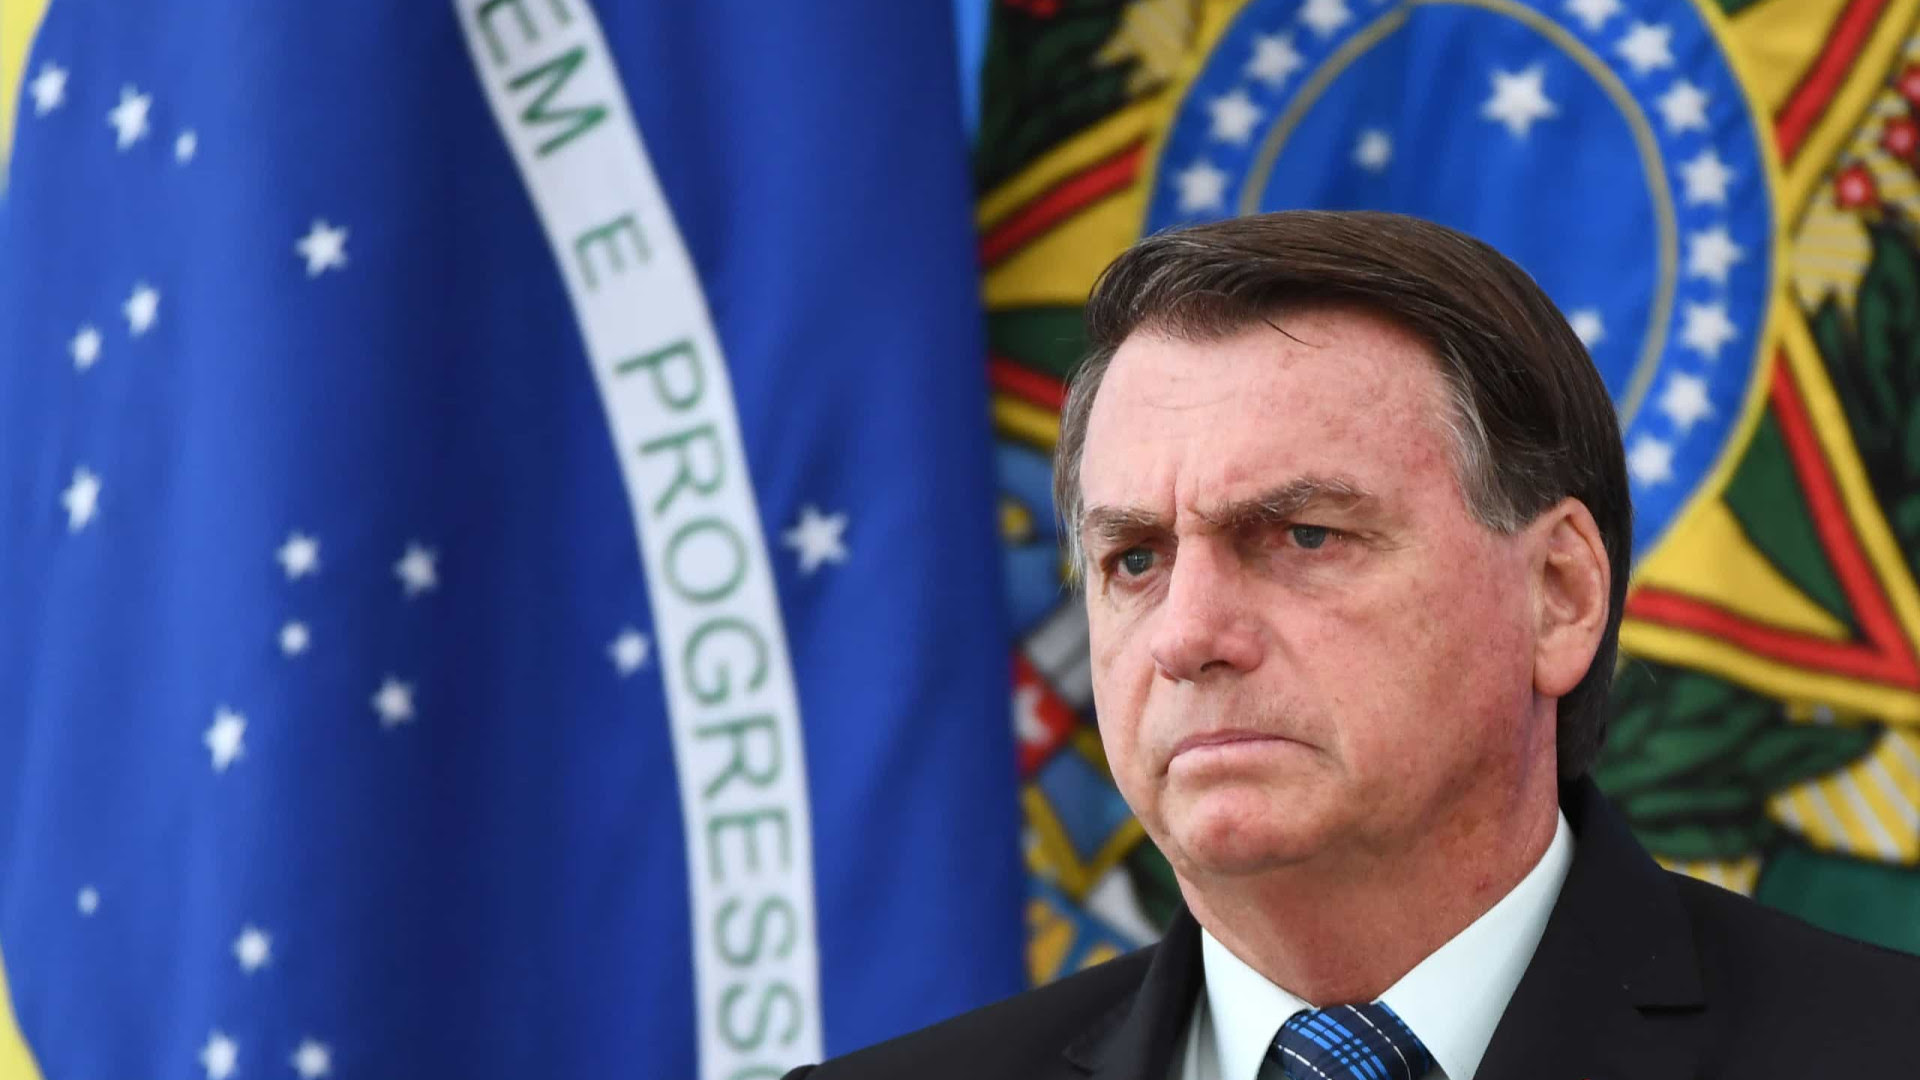 Caso Covaxin expõe contradições entre atos e discurso de Bolsonaro